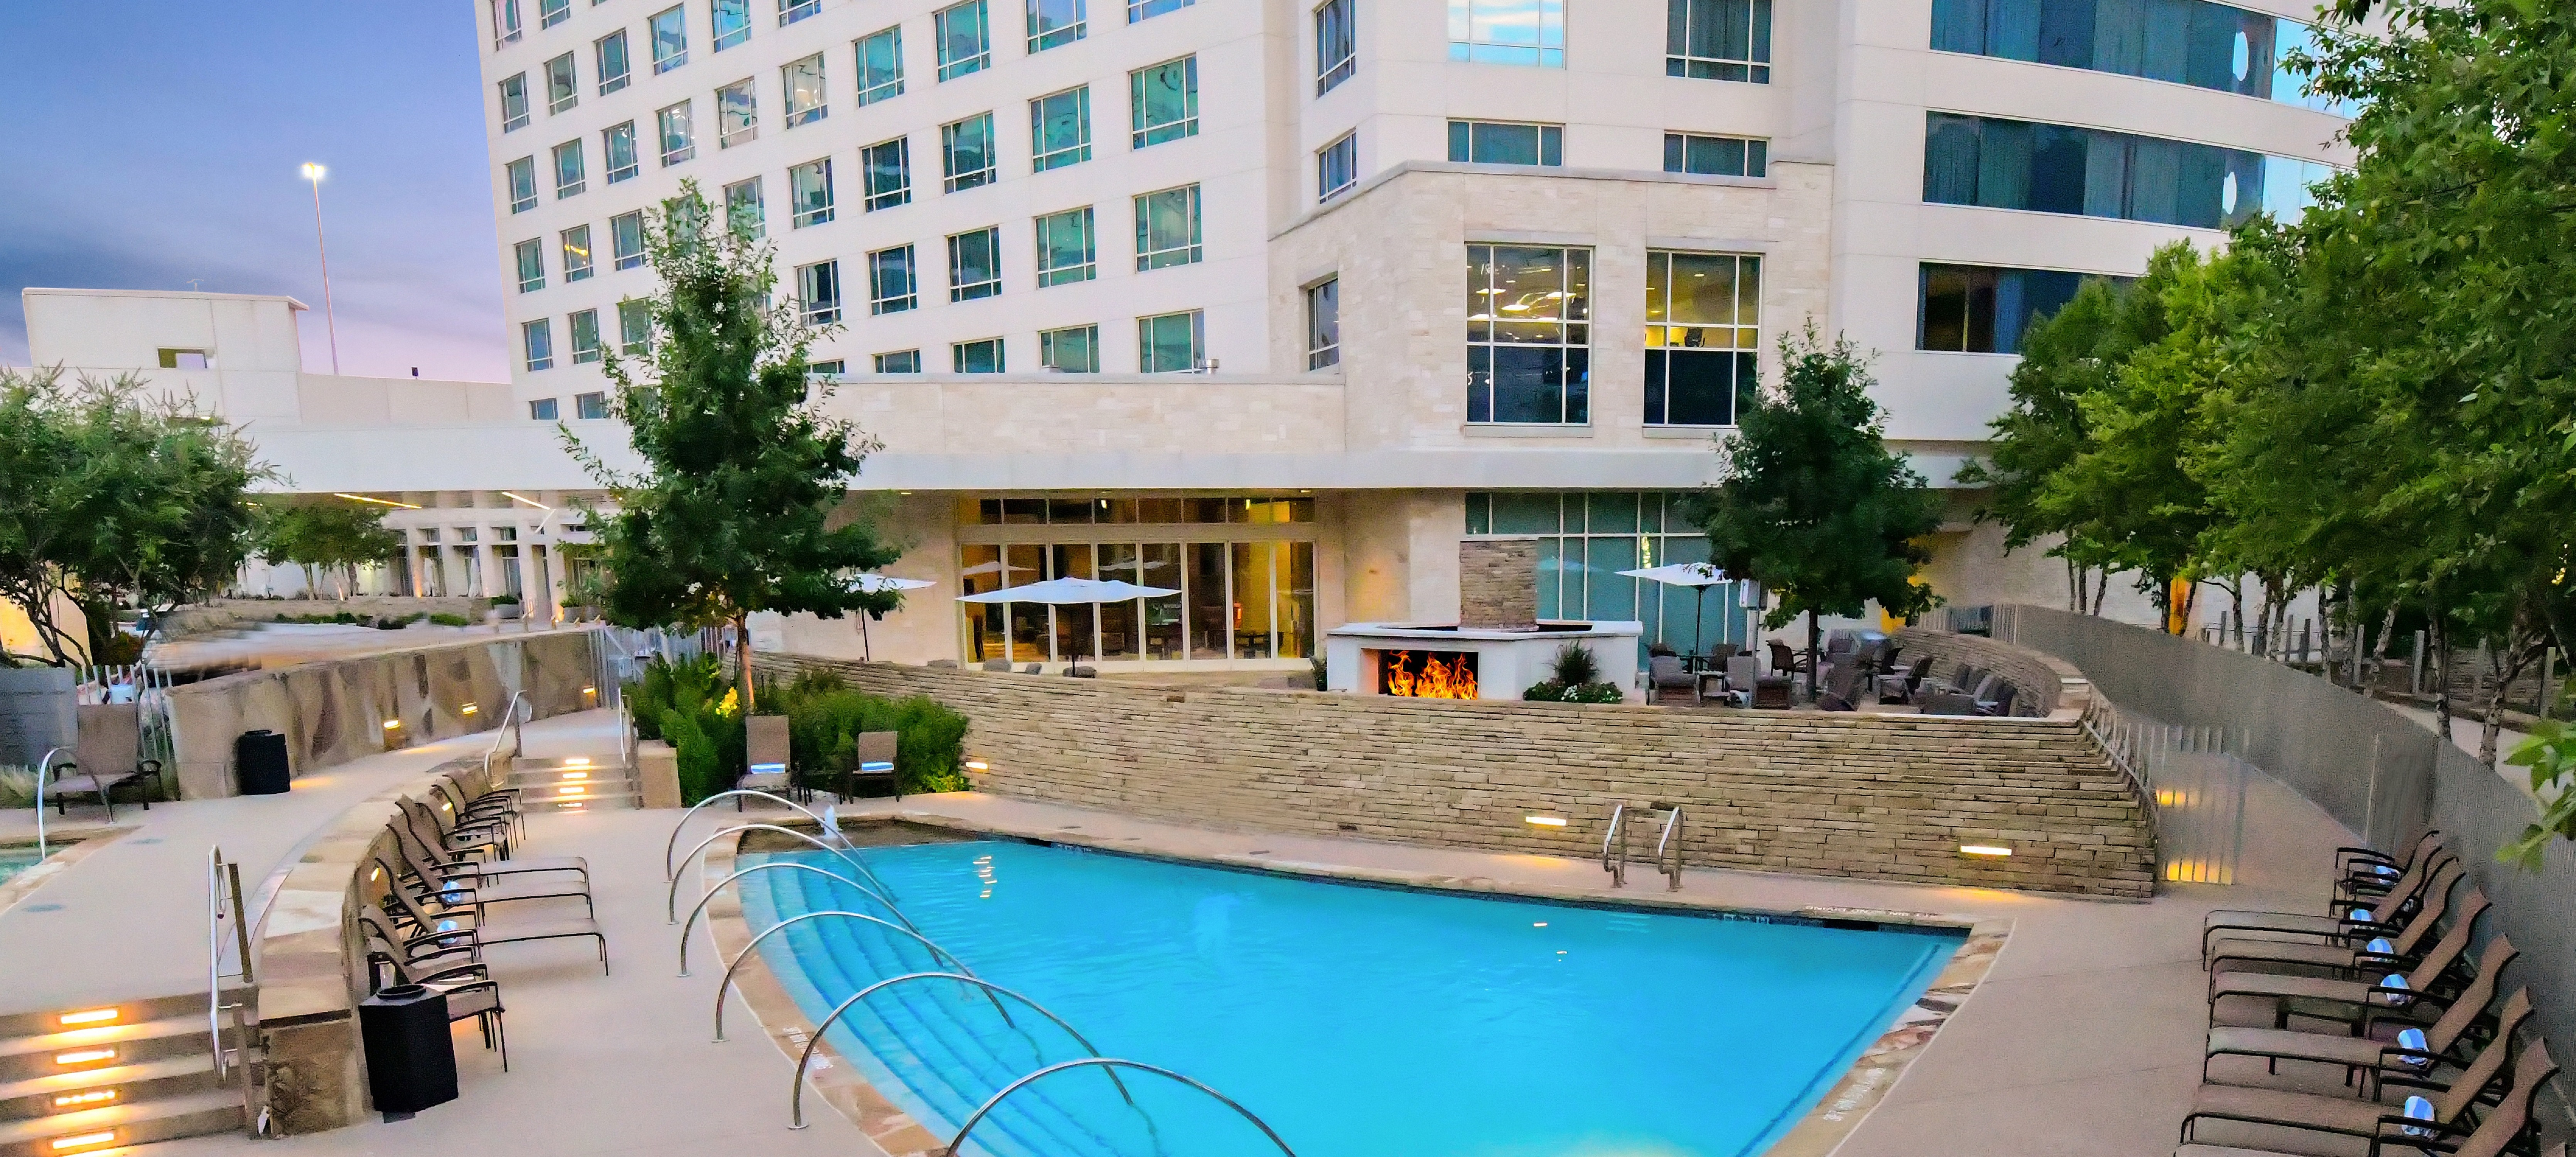 Hilton Dallas/Plano Granite Park - Pool & Fire Pit